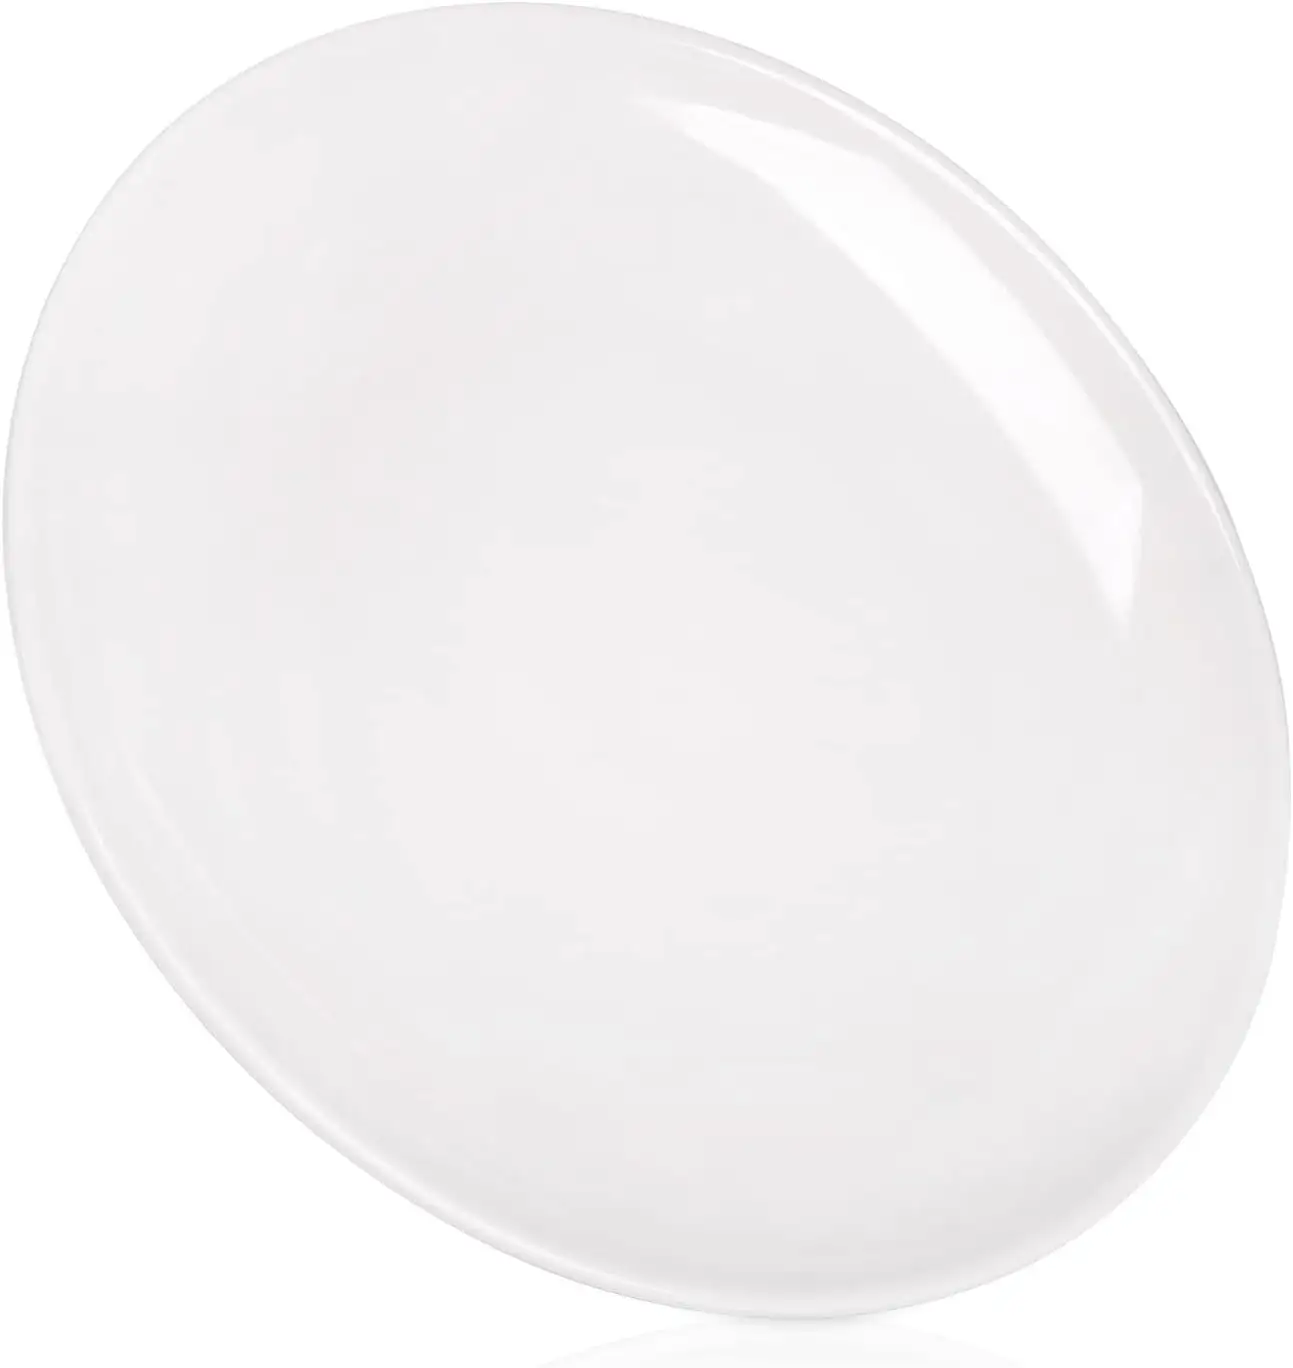 ठोस सफेद रंग कस्टम मेलामाइन डिनेरवेयर, रेस्तरां के लिए थोक सादा गोल मेमाइन प्लेट